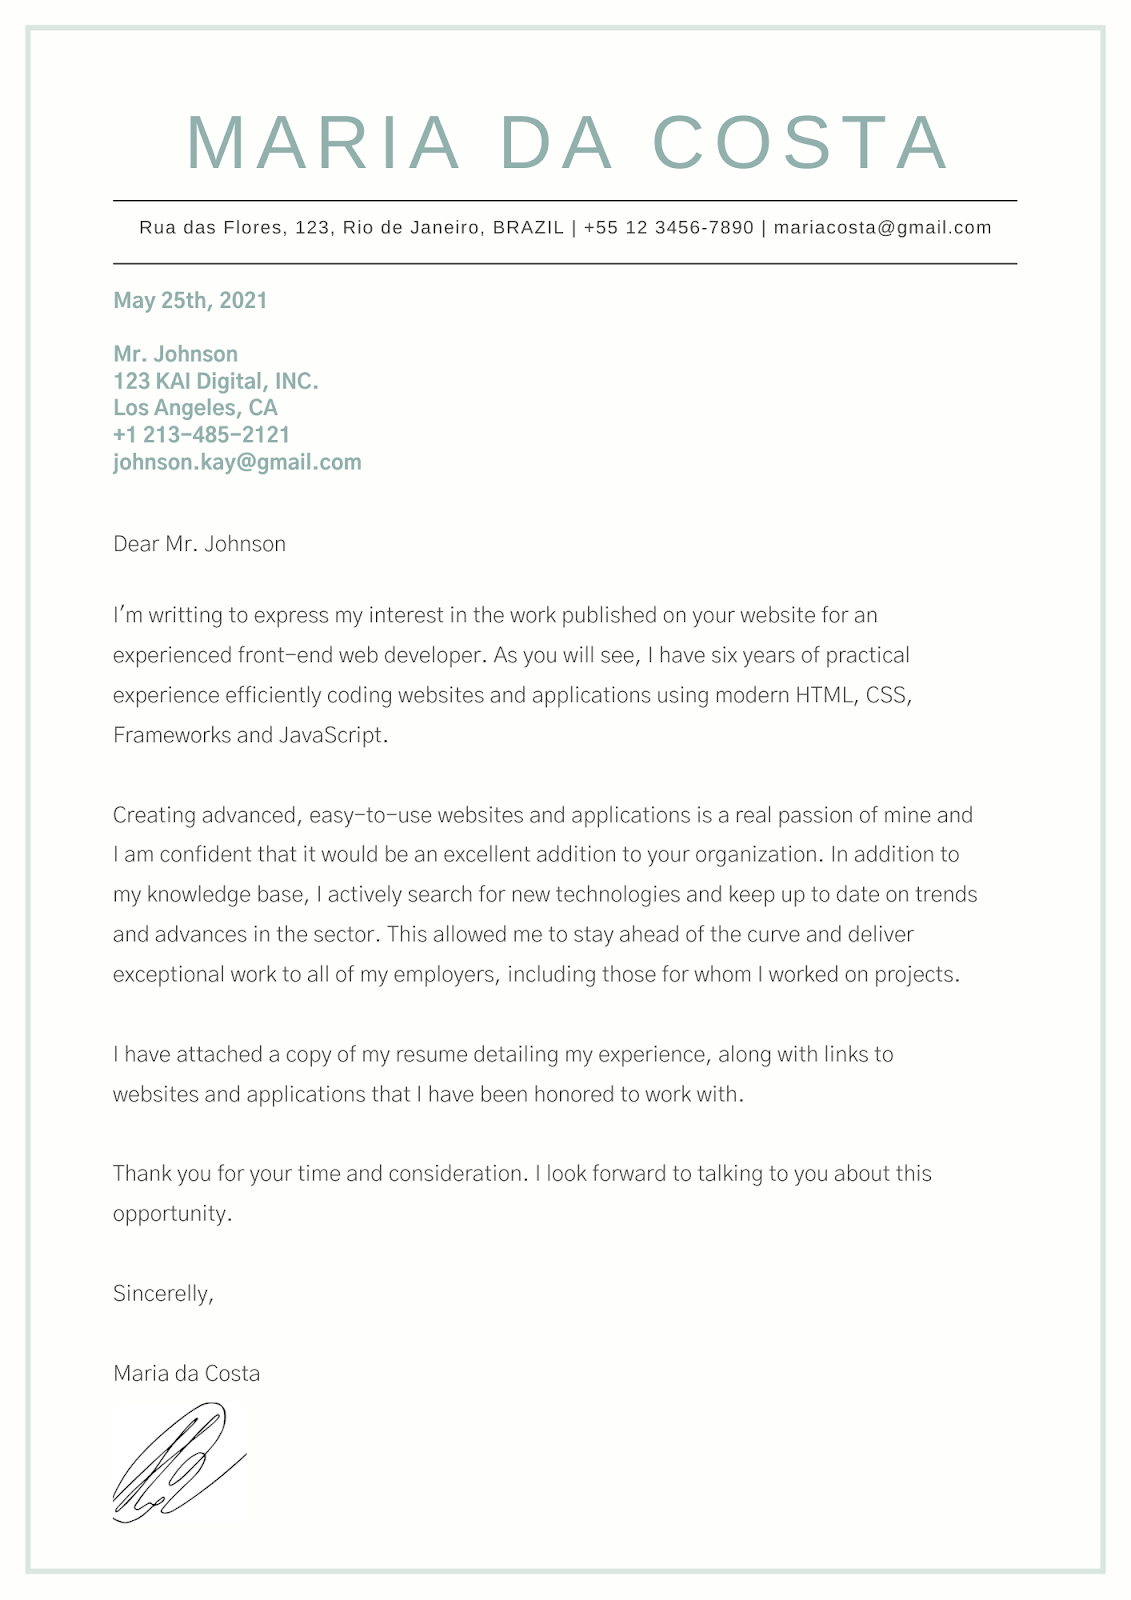 A imagem mostra uma carta de apresentação em inglês de uma personagem chamada Maria da Costa, que busca se candidatar para o cargo de Desenvolvedora Front-End na empresa KAI Digital, INC.